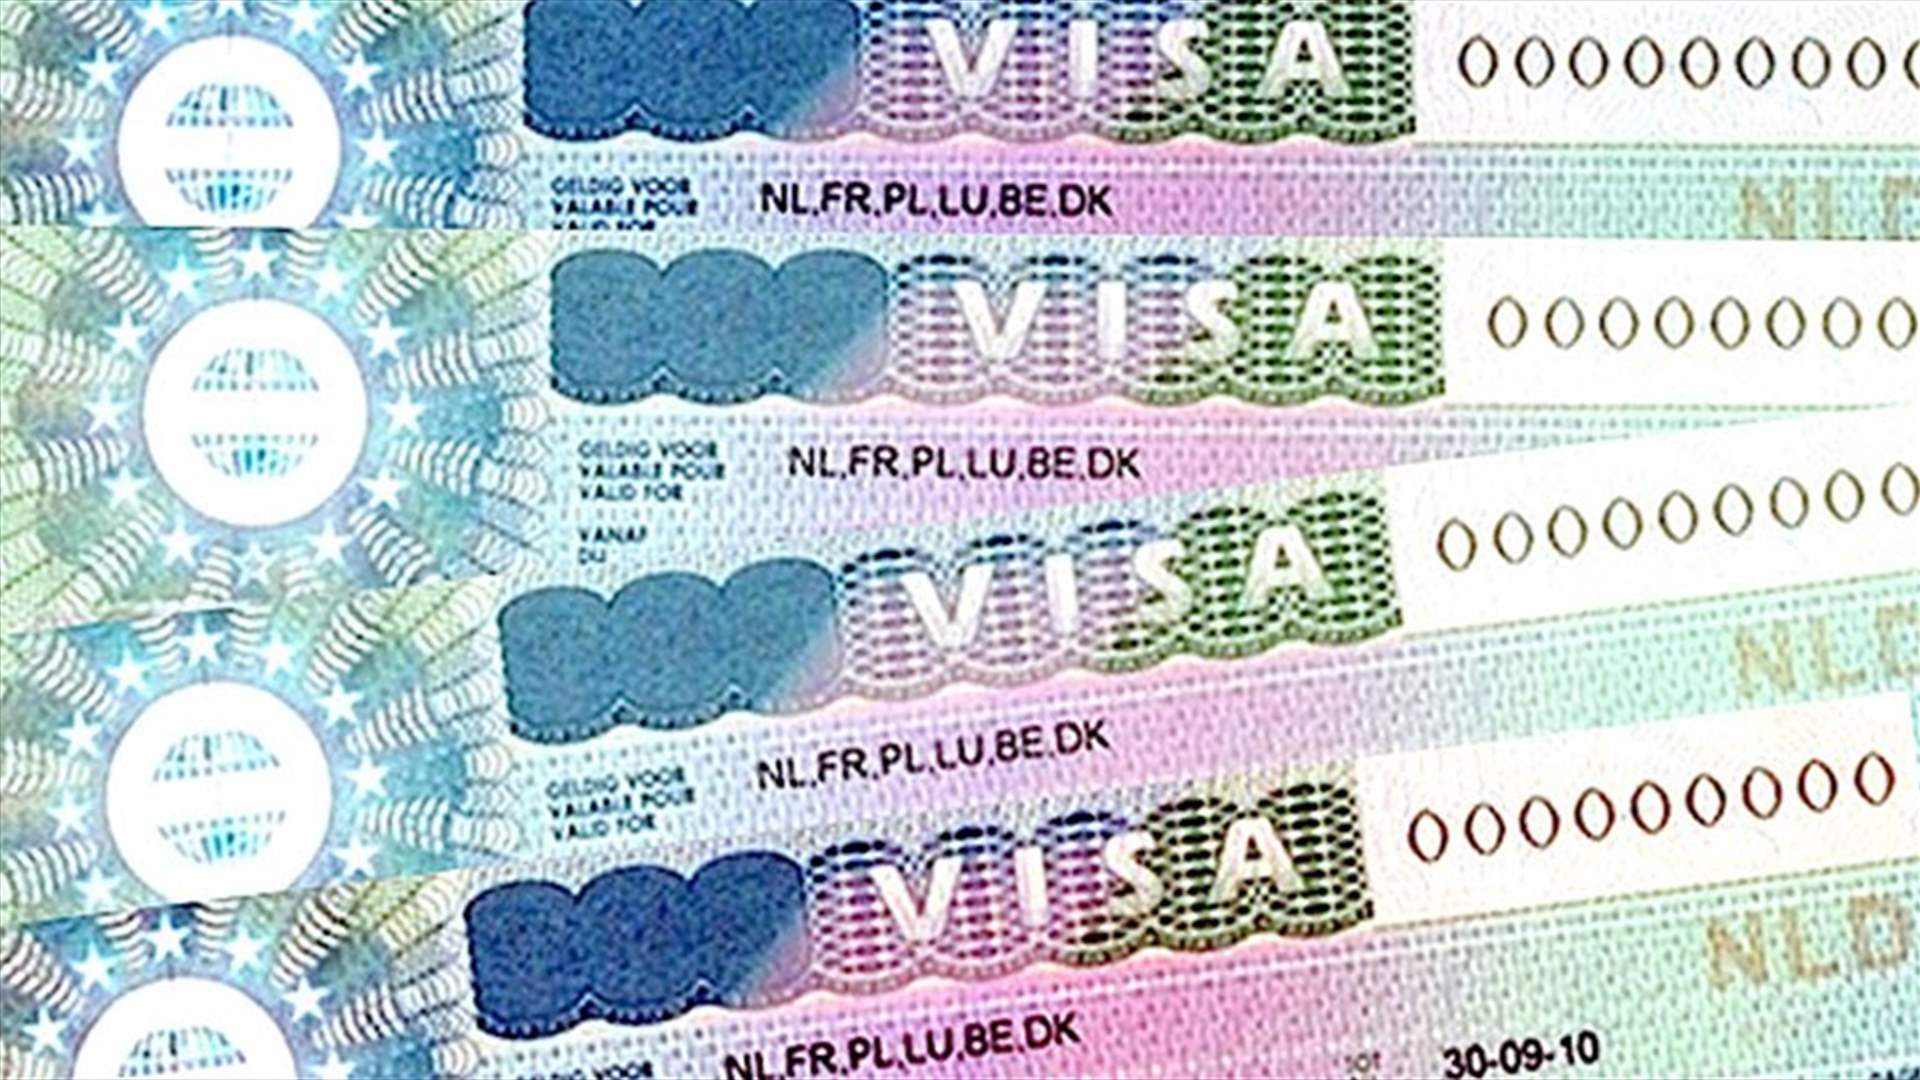 10 الاف يورو للحصول على تأشيرة ايطالية!